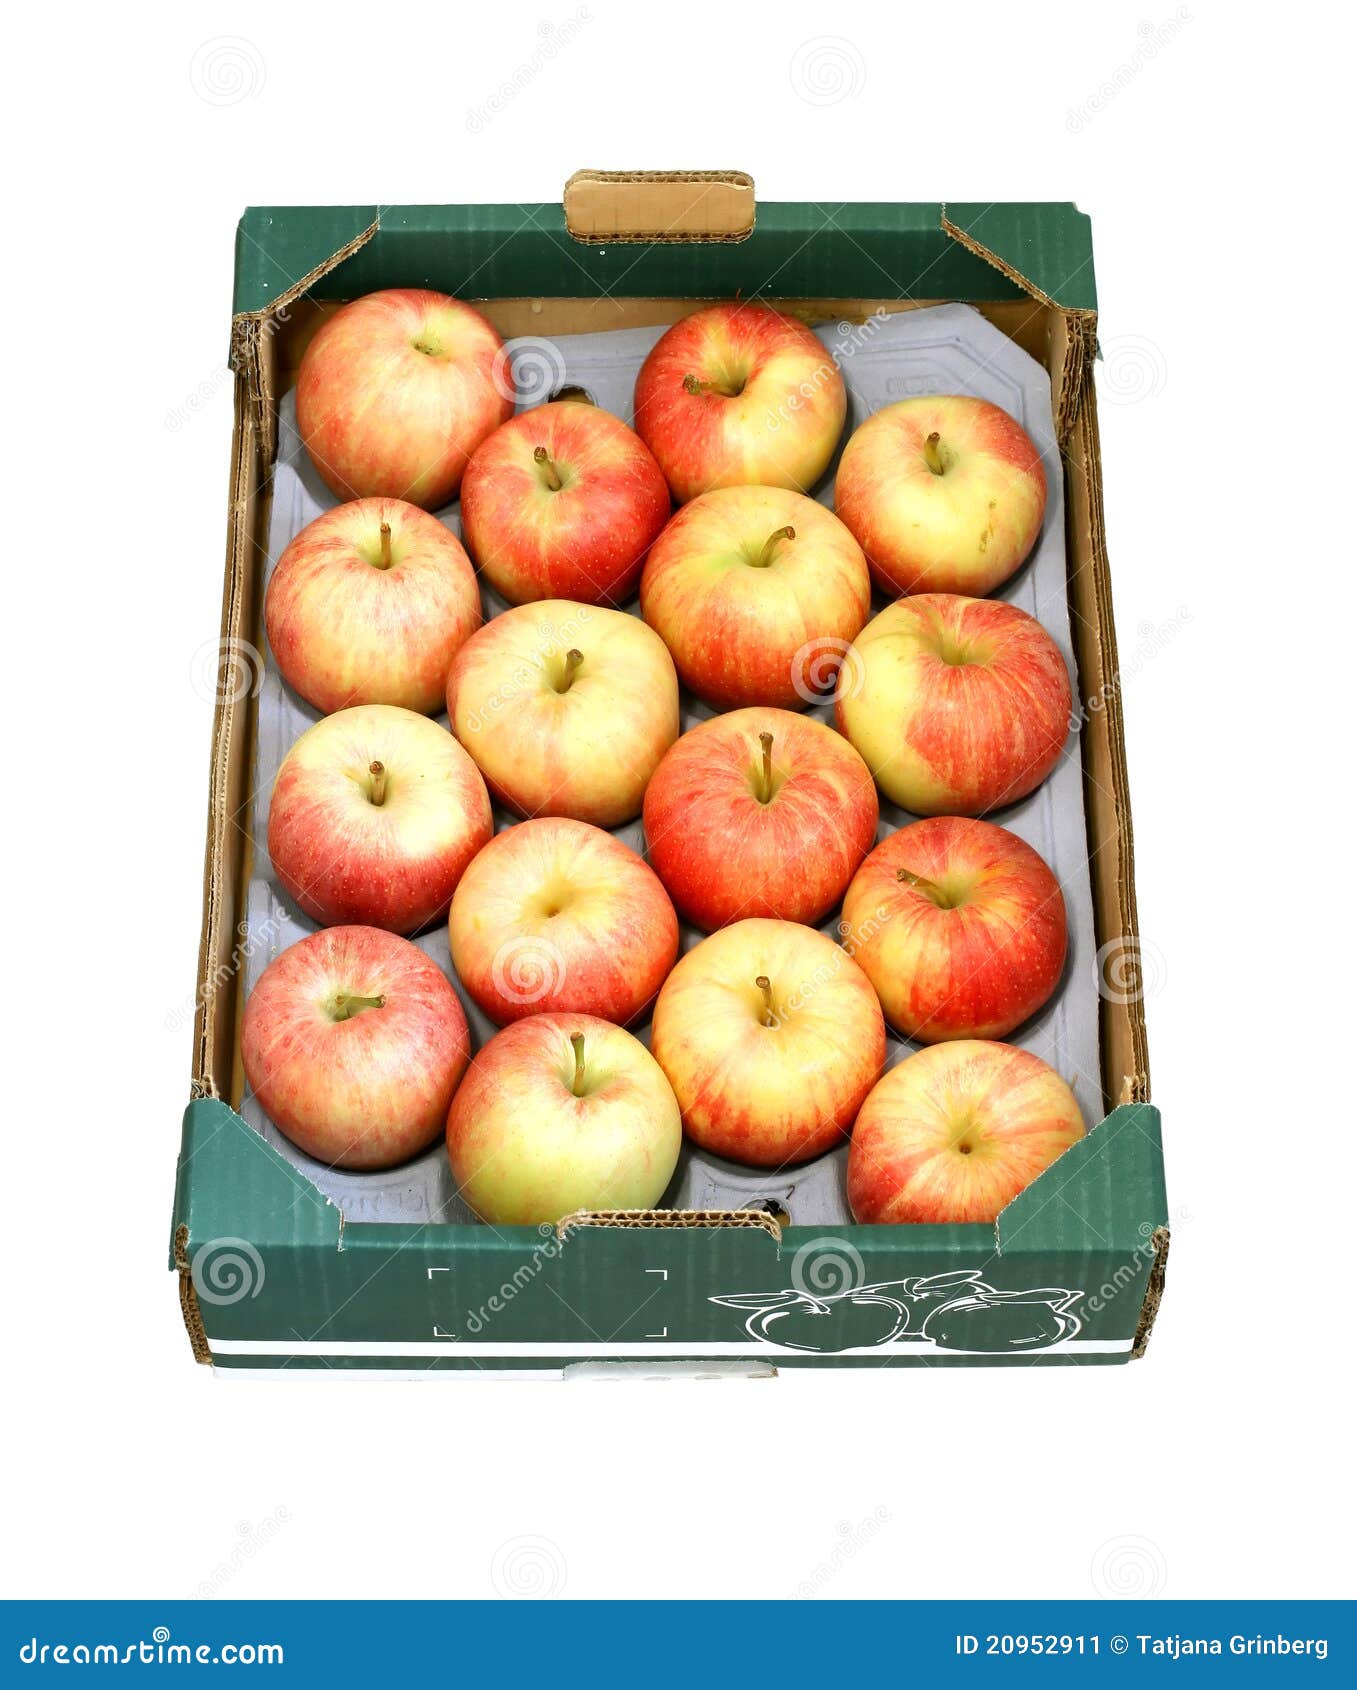 1 trozo 10 litros bag in box caja de cartón en decoración de manzana 